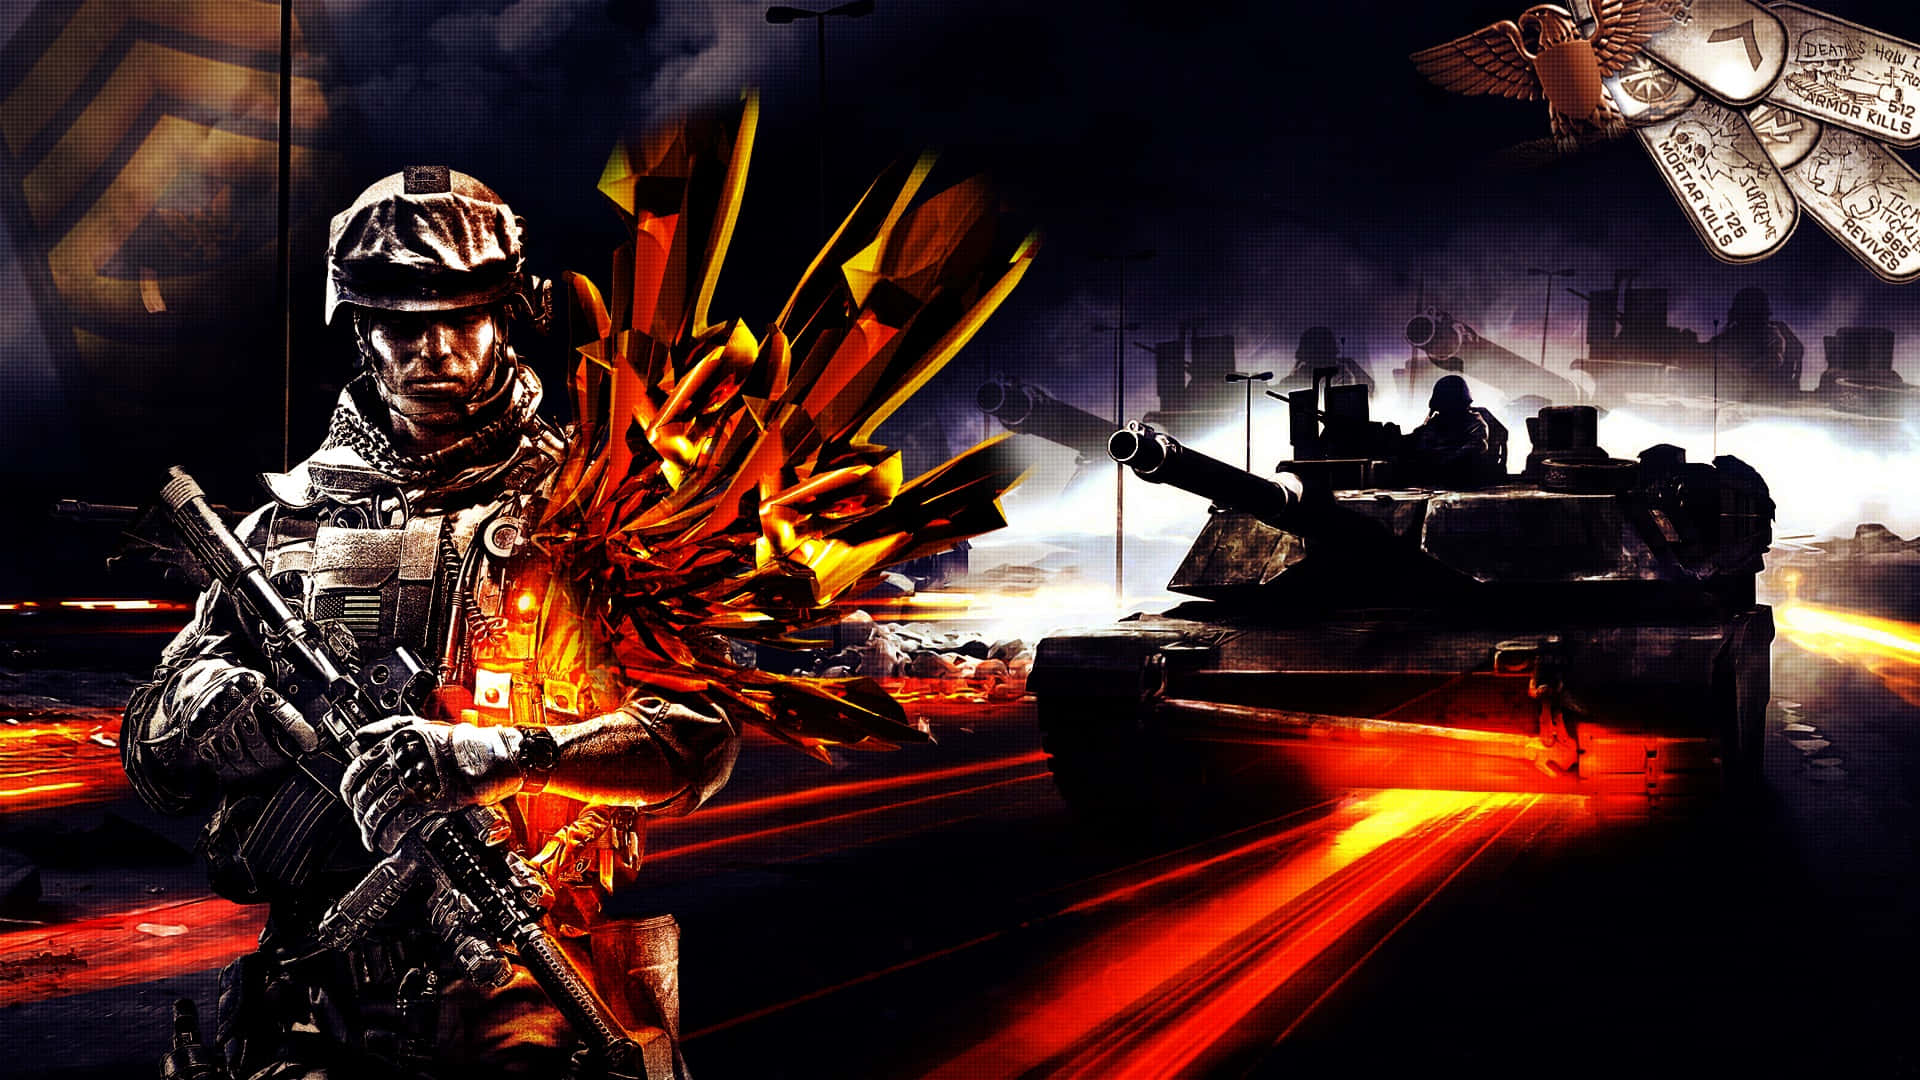 Image  Intense firefight in Battlefield 3